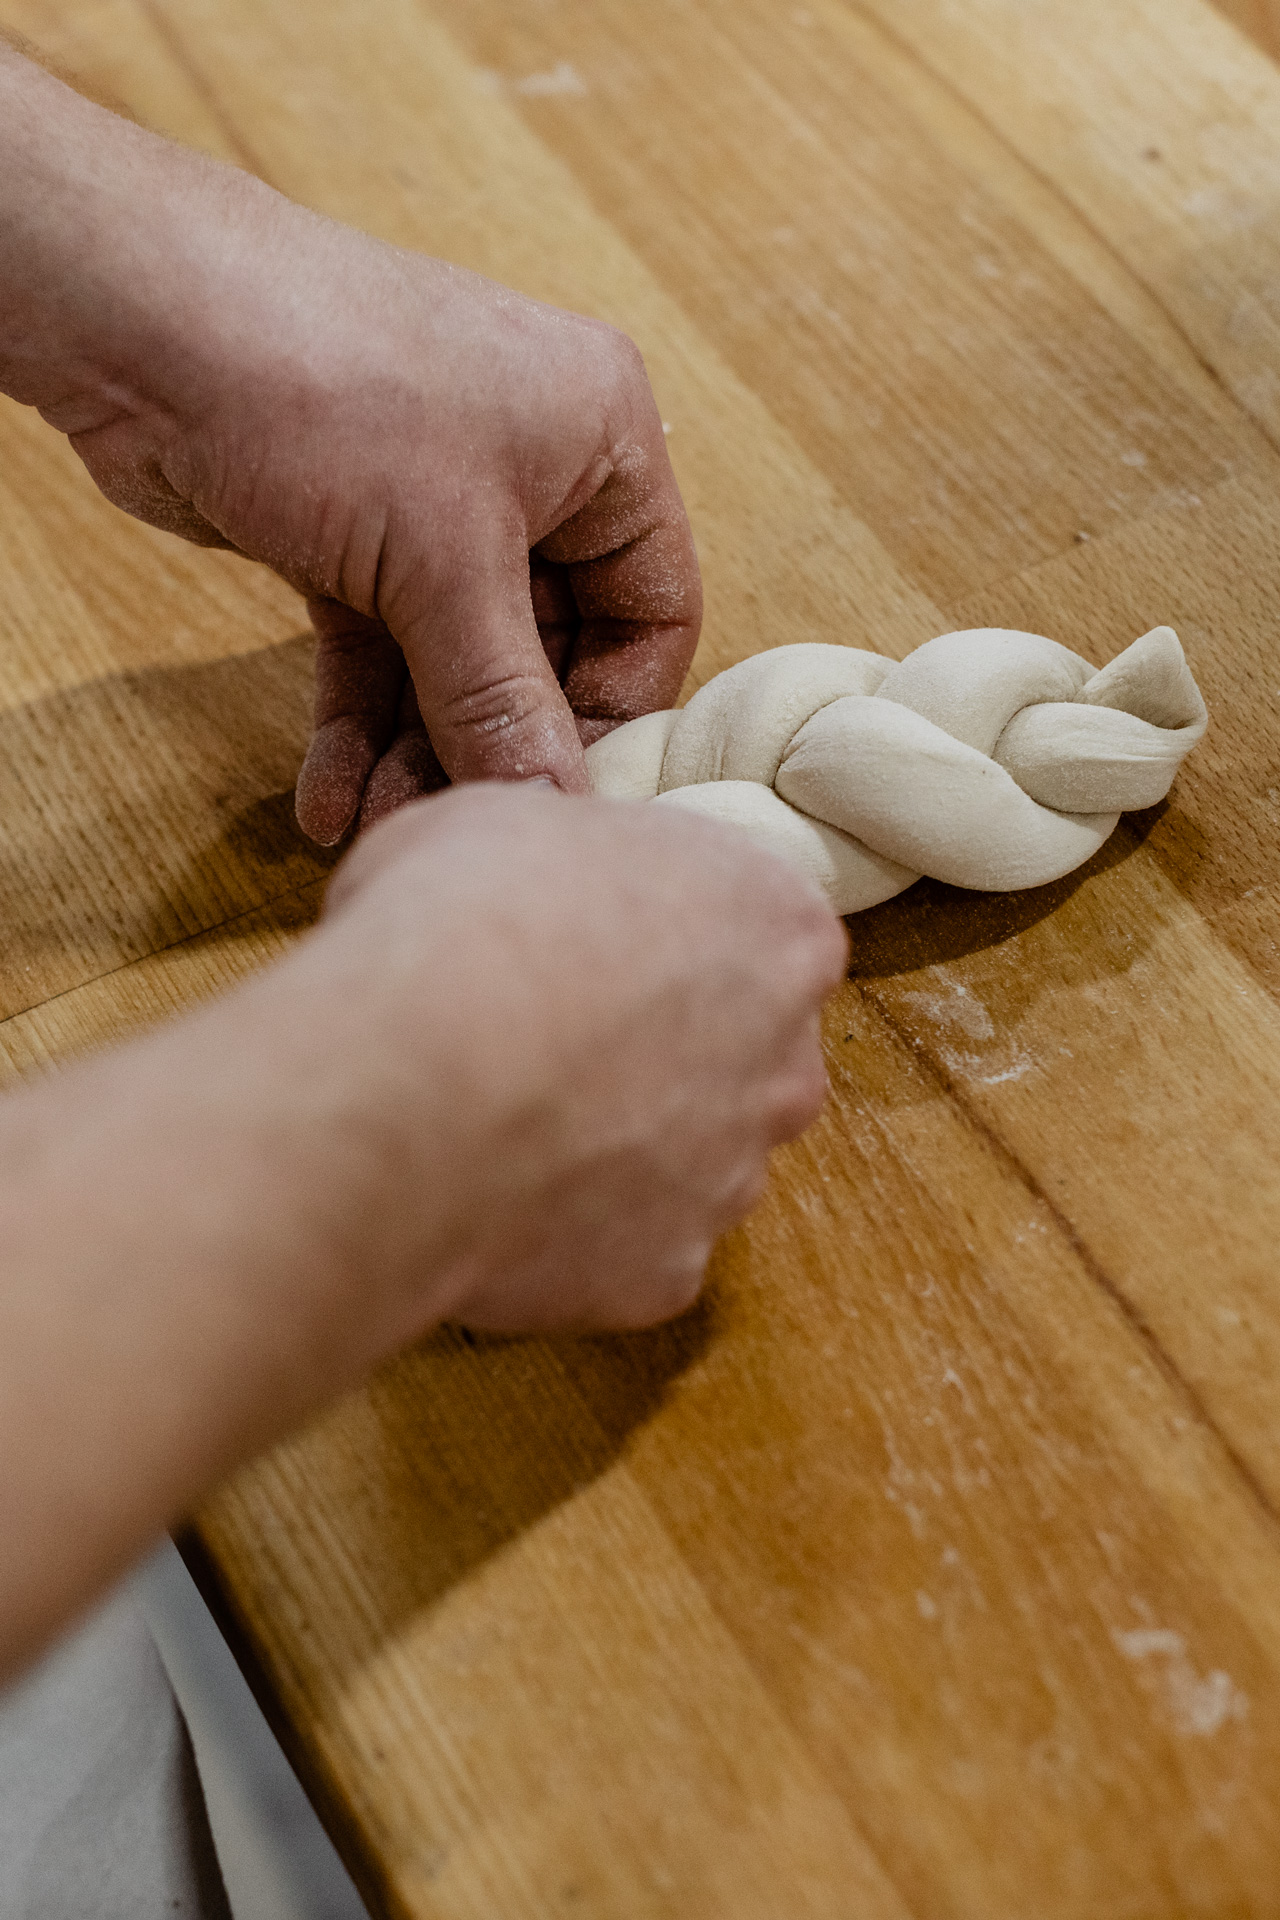 Mohnzopf wird mit detailreicher Handarbeit in der Landbäckerei Schmidt hergestellt.